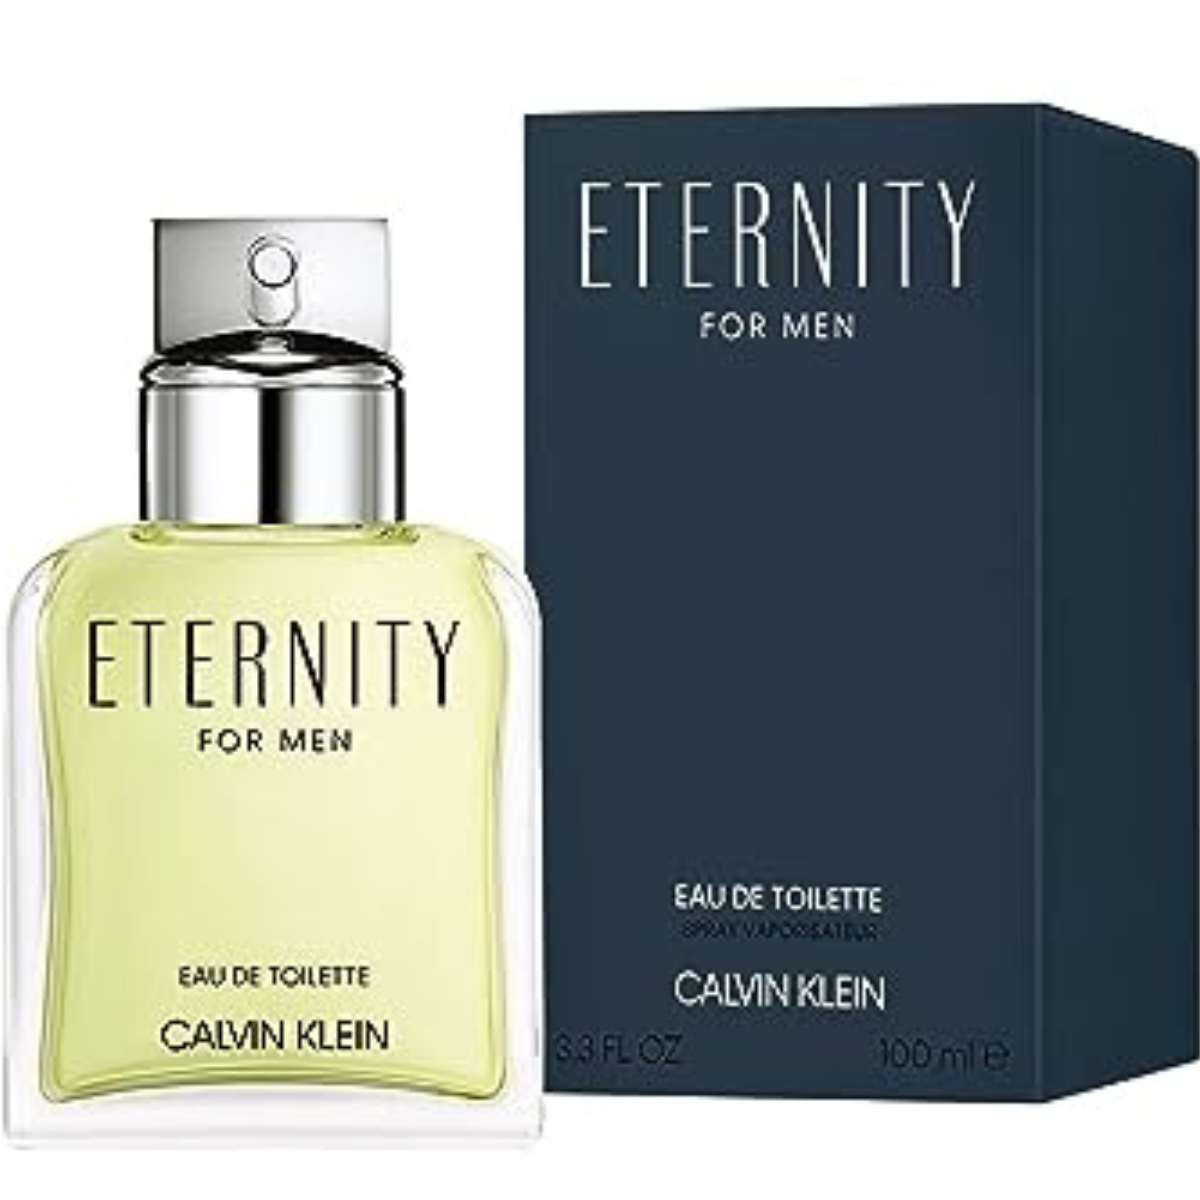 Calvin Klein Eternity 100 Ml For Men Perfume-1